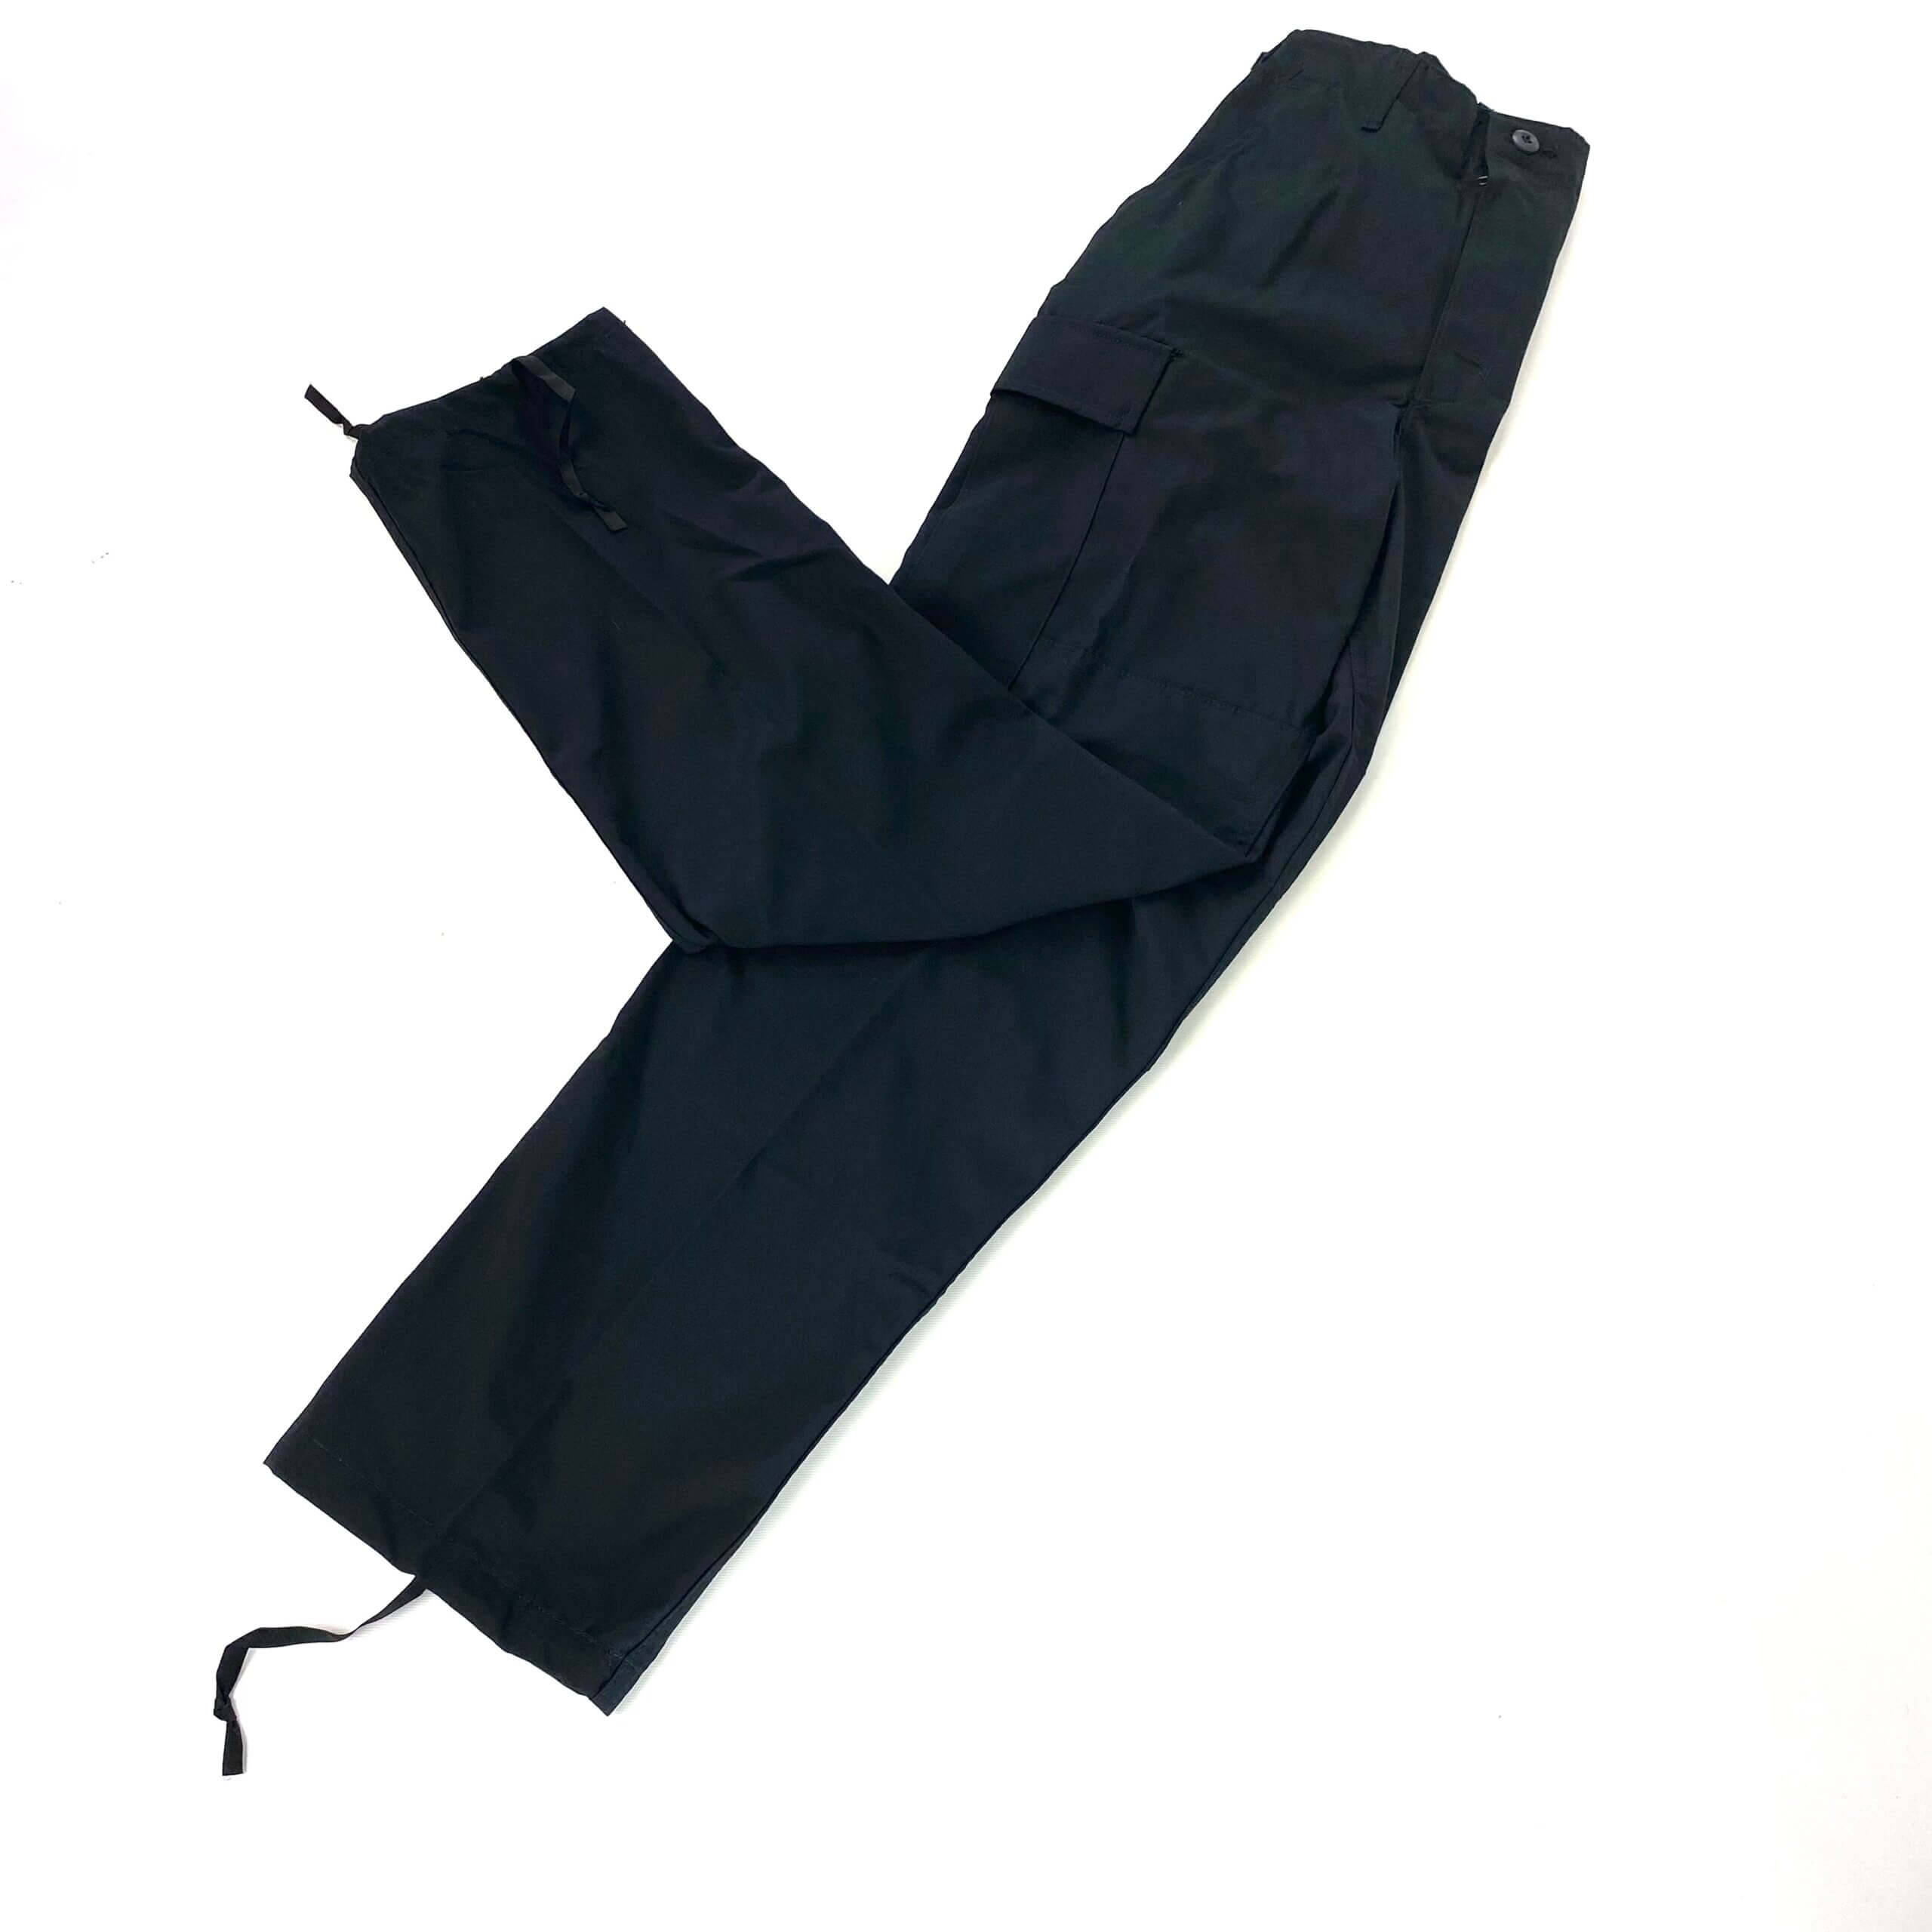 Propper Uniform BDU Trouser, Black - Venture Surplus